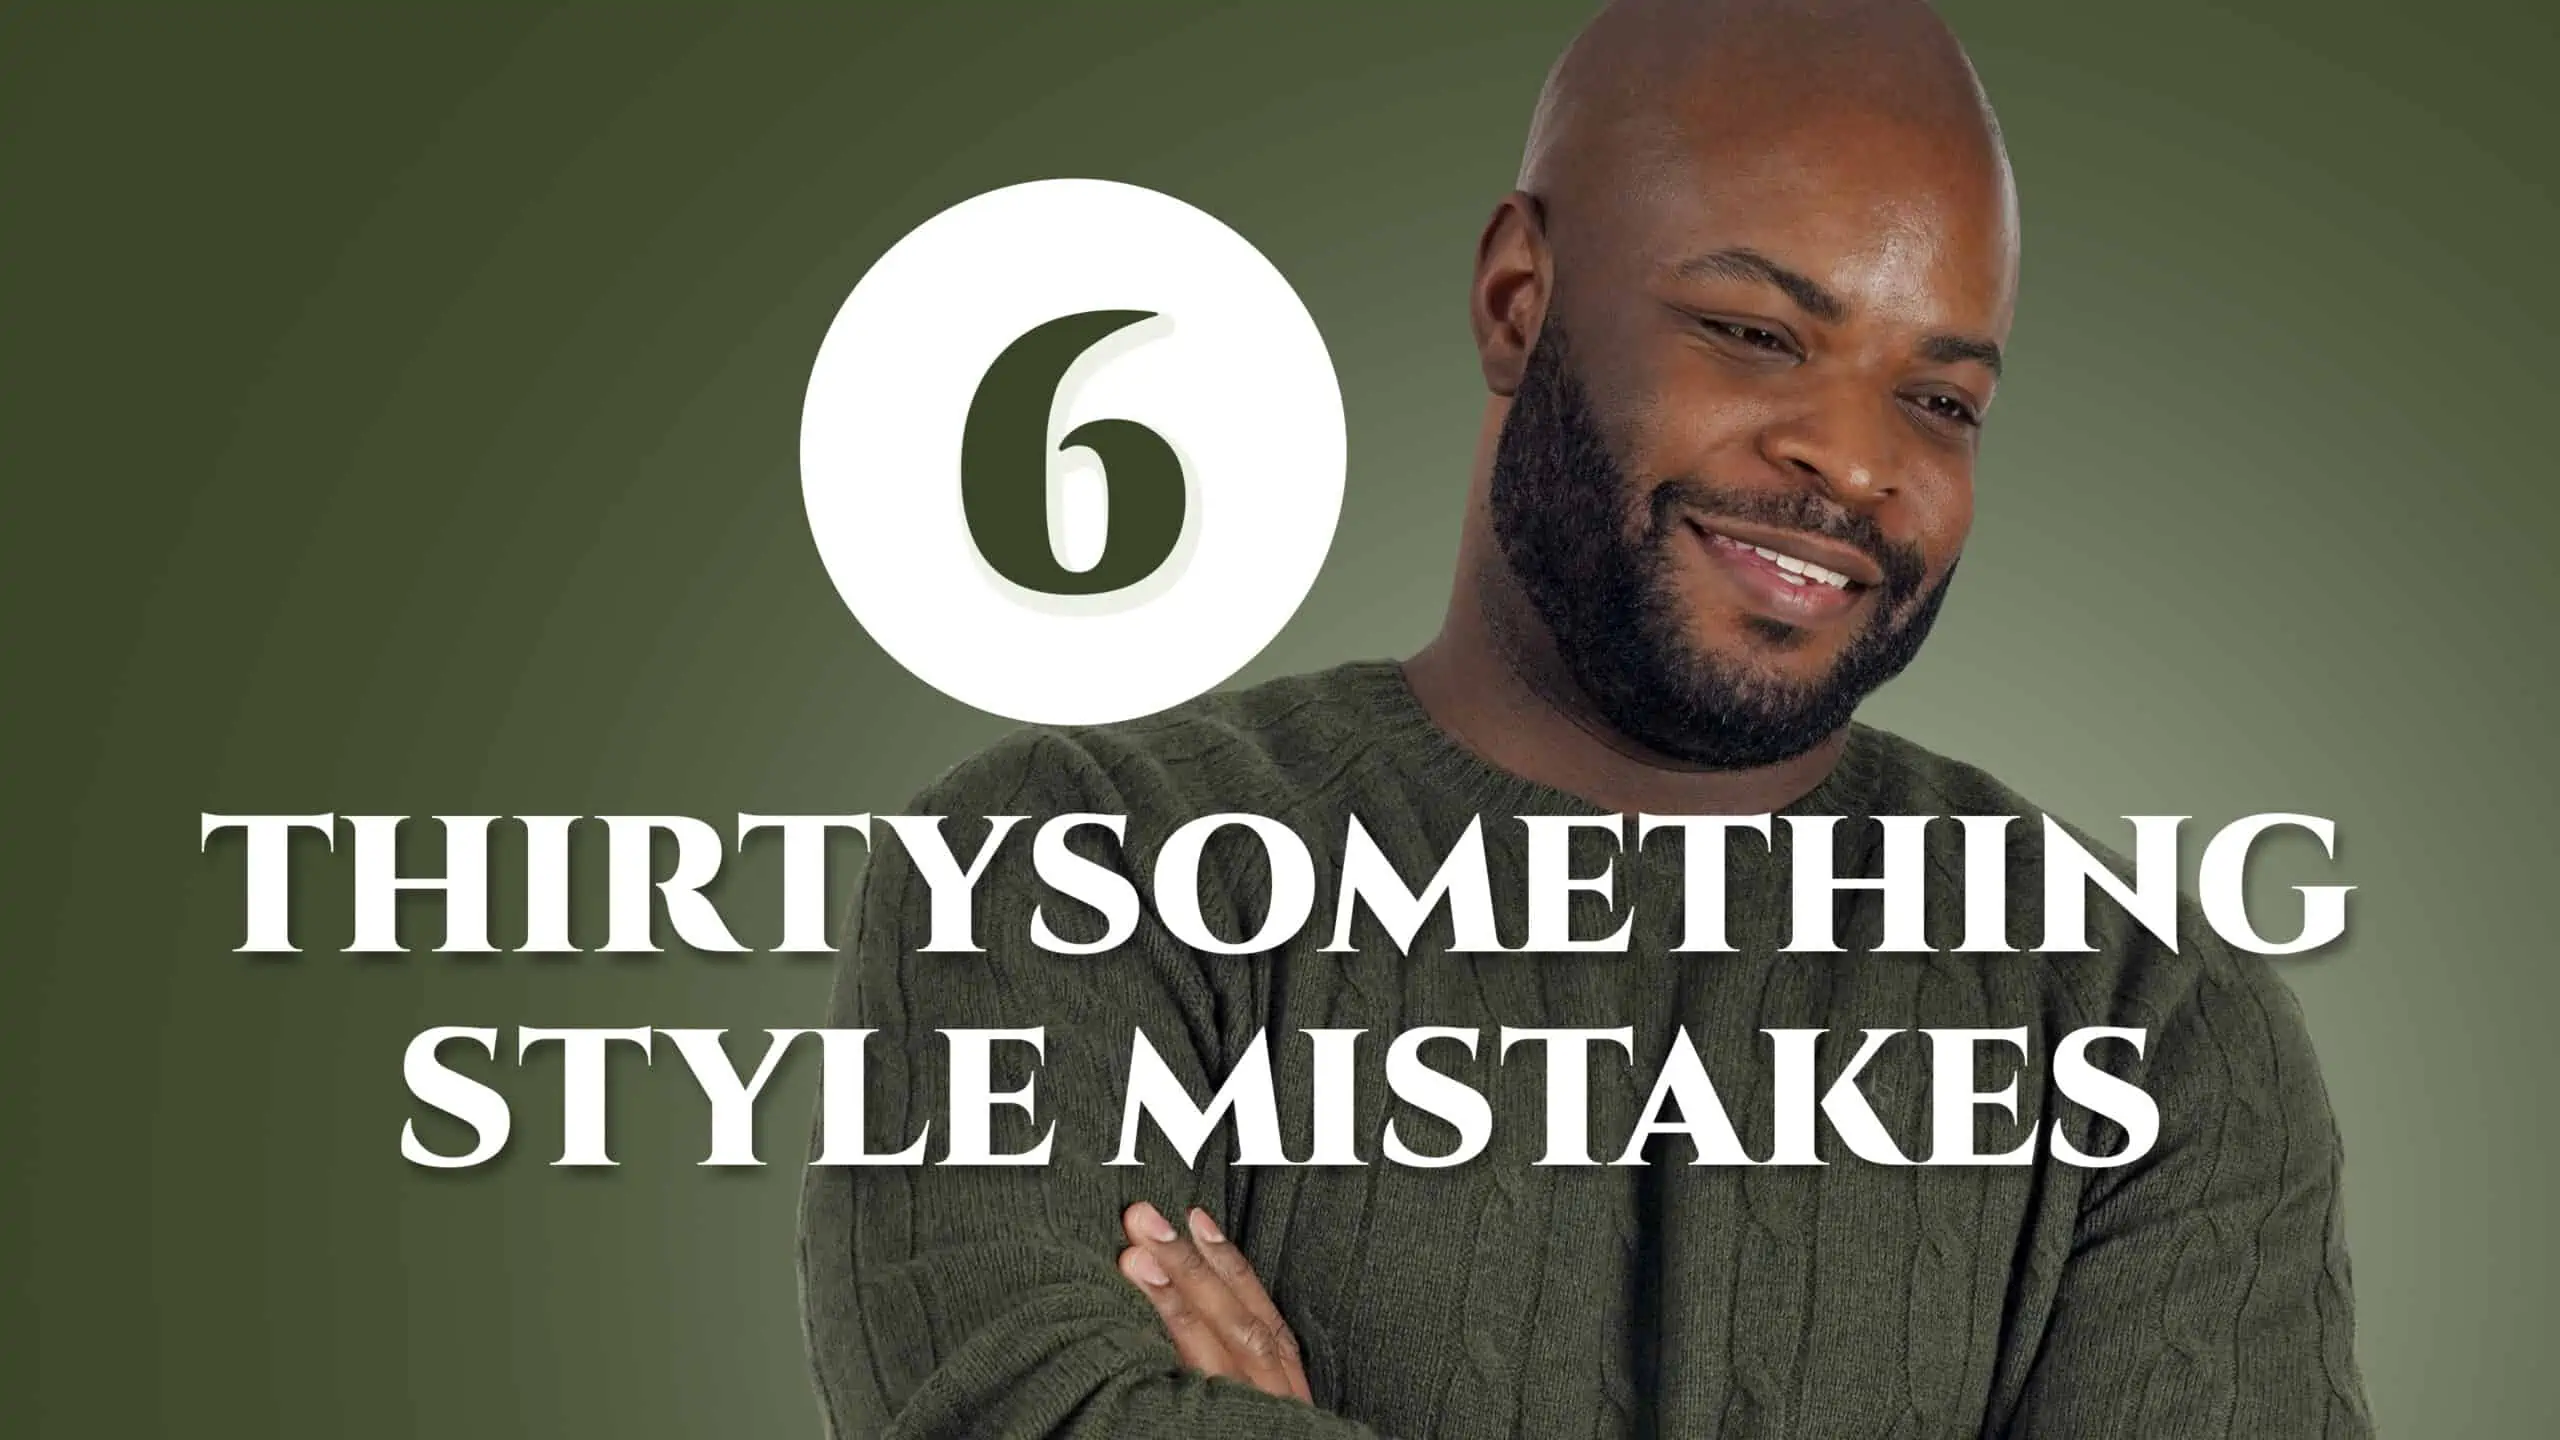 6 Thirtysomething Style Mistakes 3840x2160 scaled